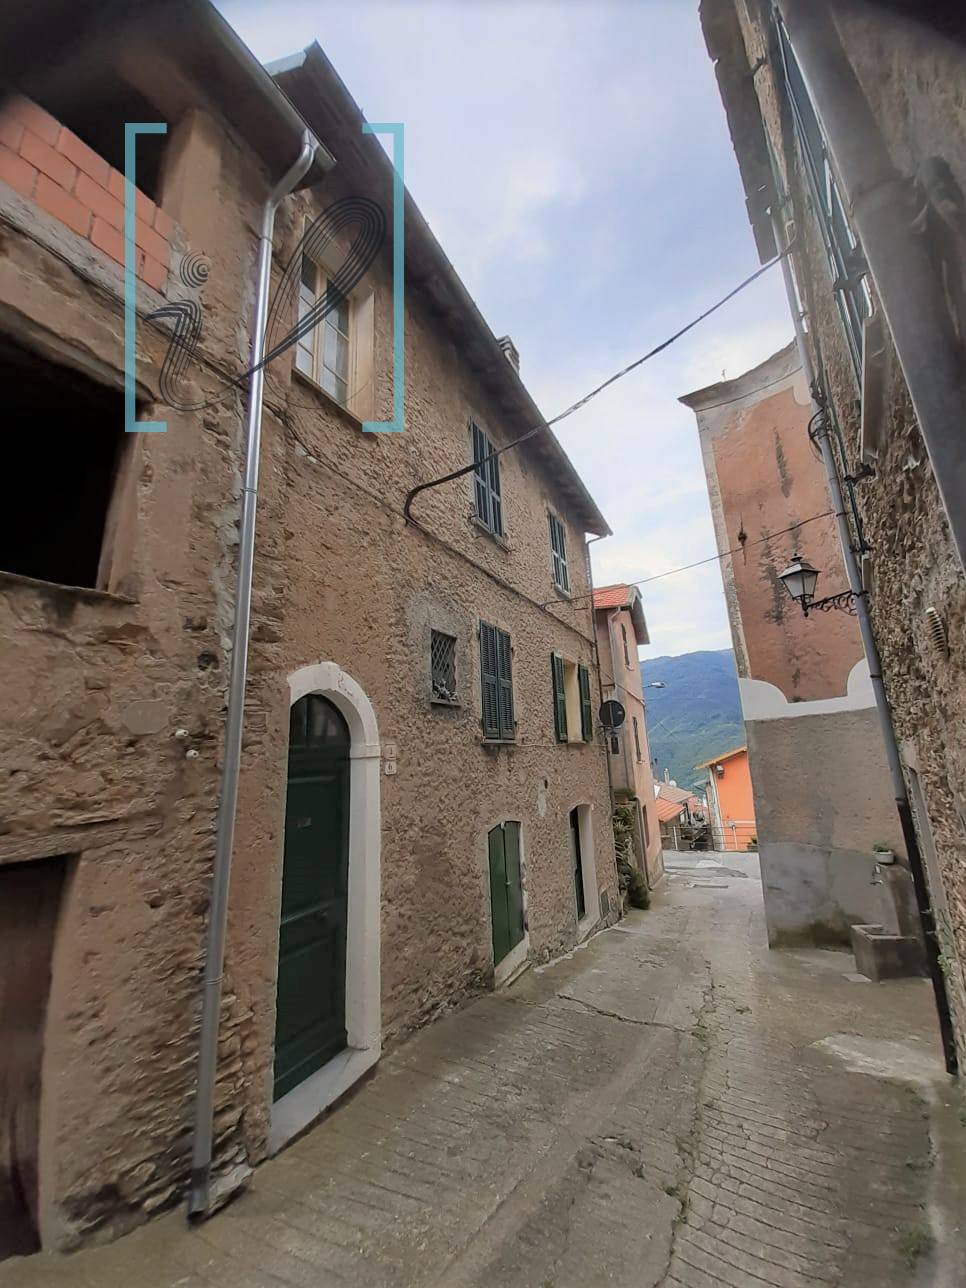 Rustico / Casale in vendita a Pornassio, 4 locali, zona Zona: Ottano, prezzo € 85.000 | CambioCasa.it